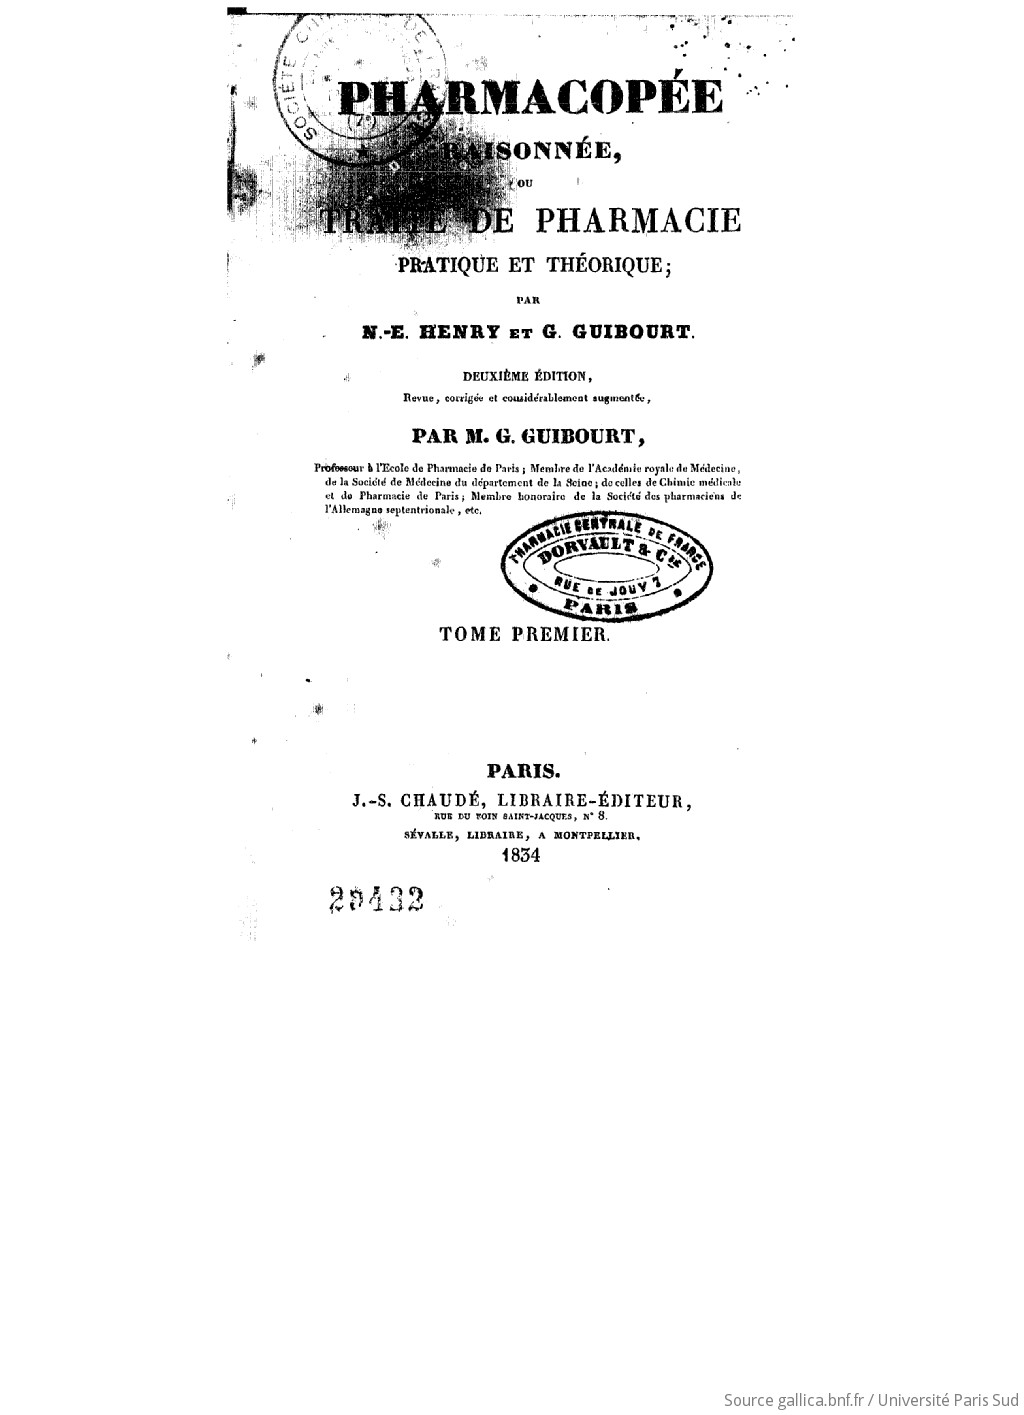 [PDF] Ouvrages anciens: Plantes potagéres,médicinales .... F3